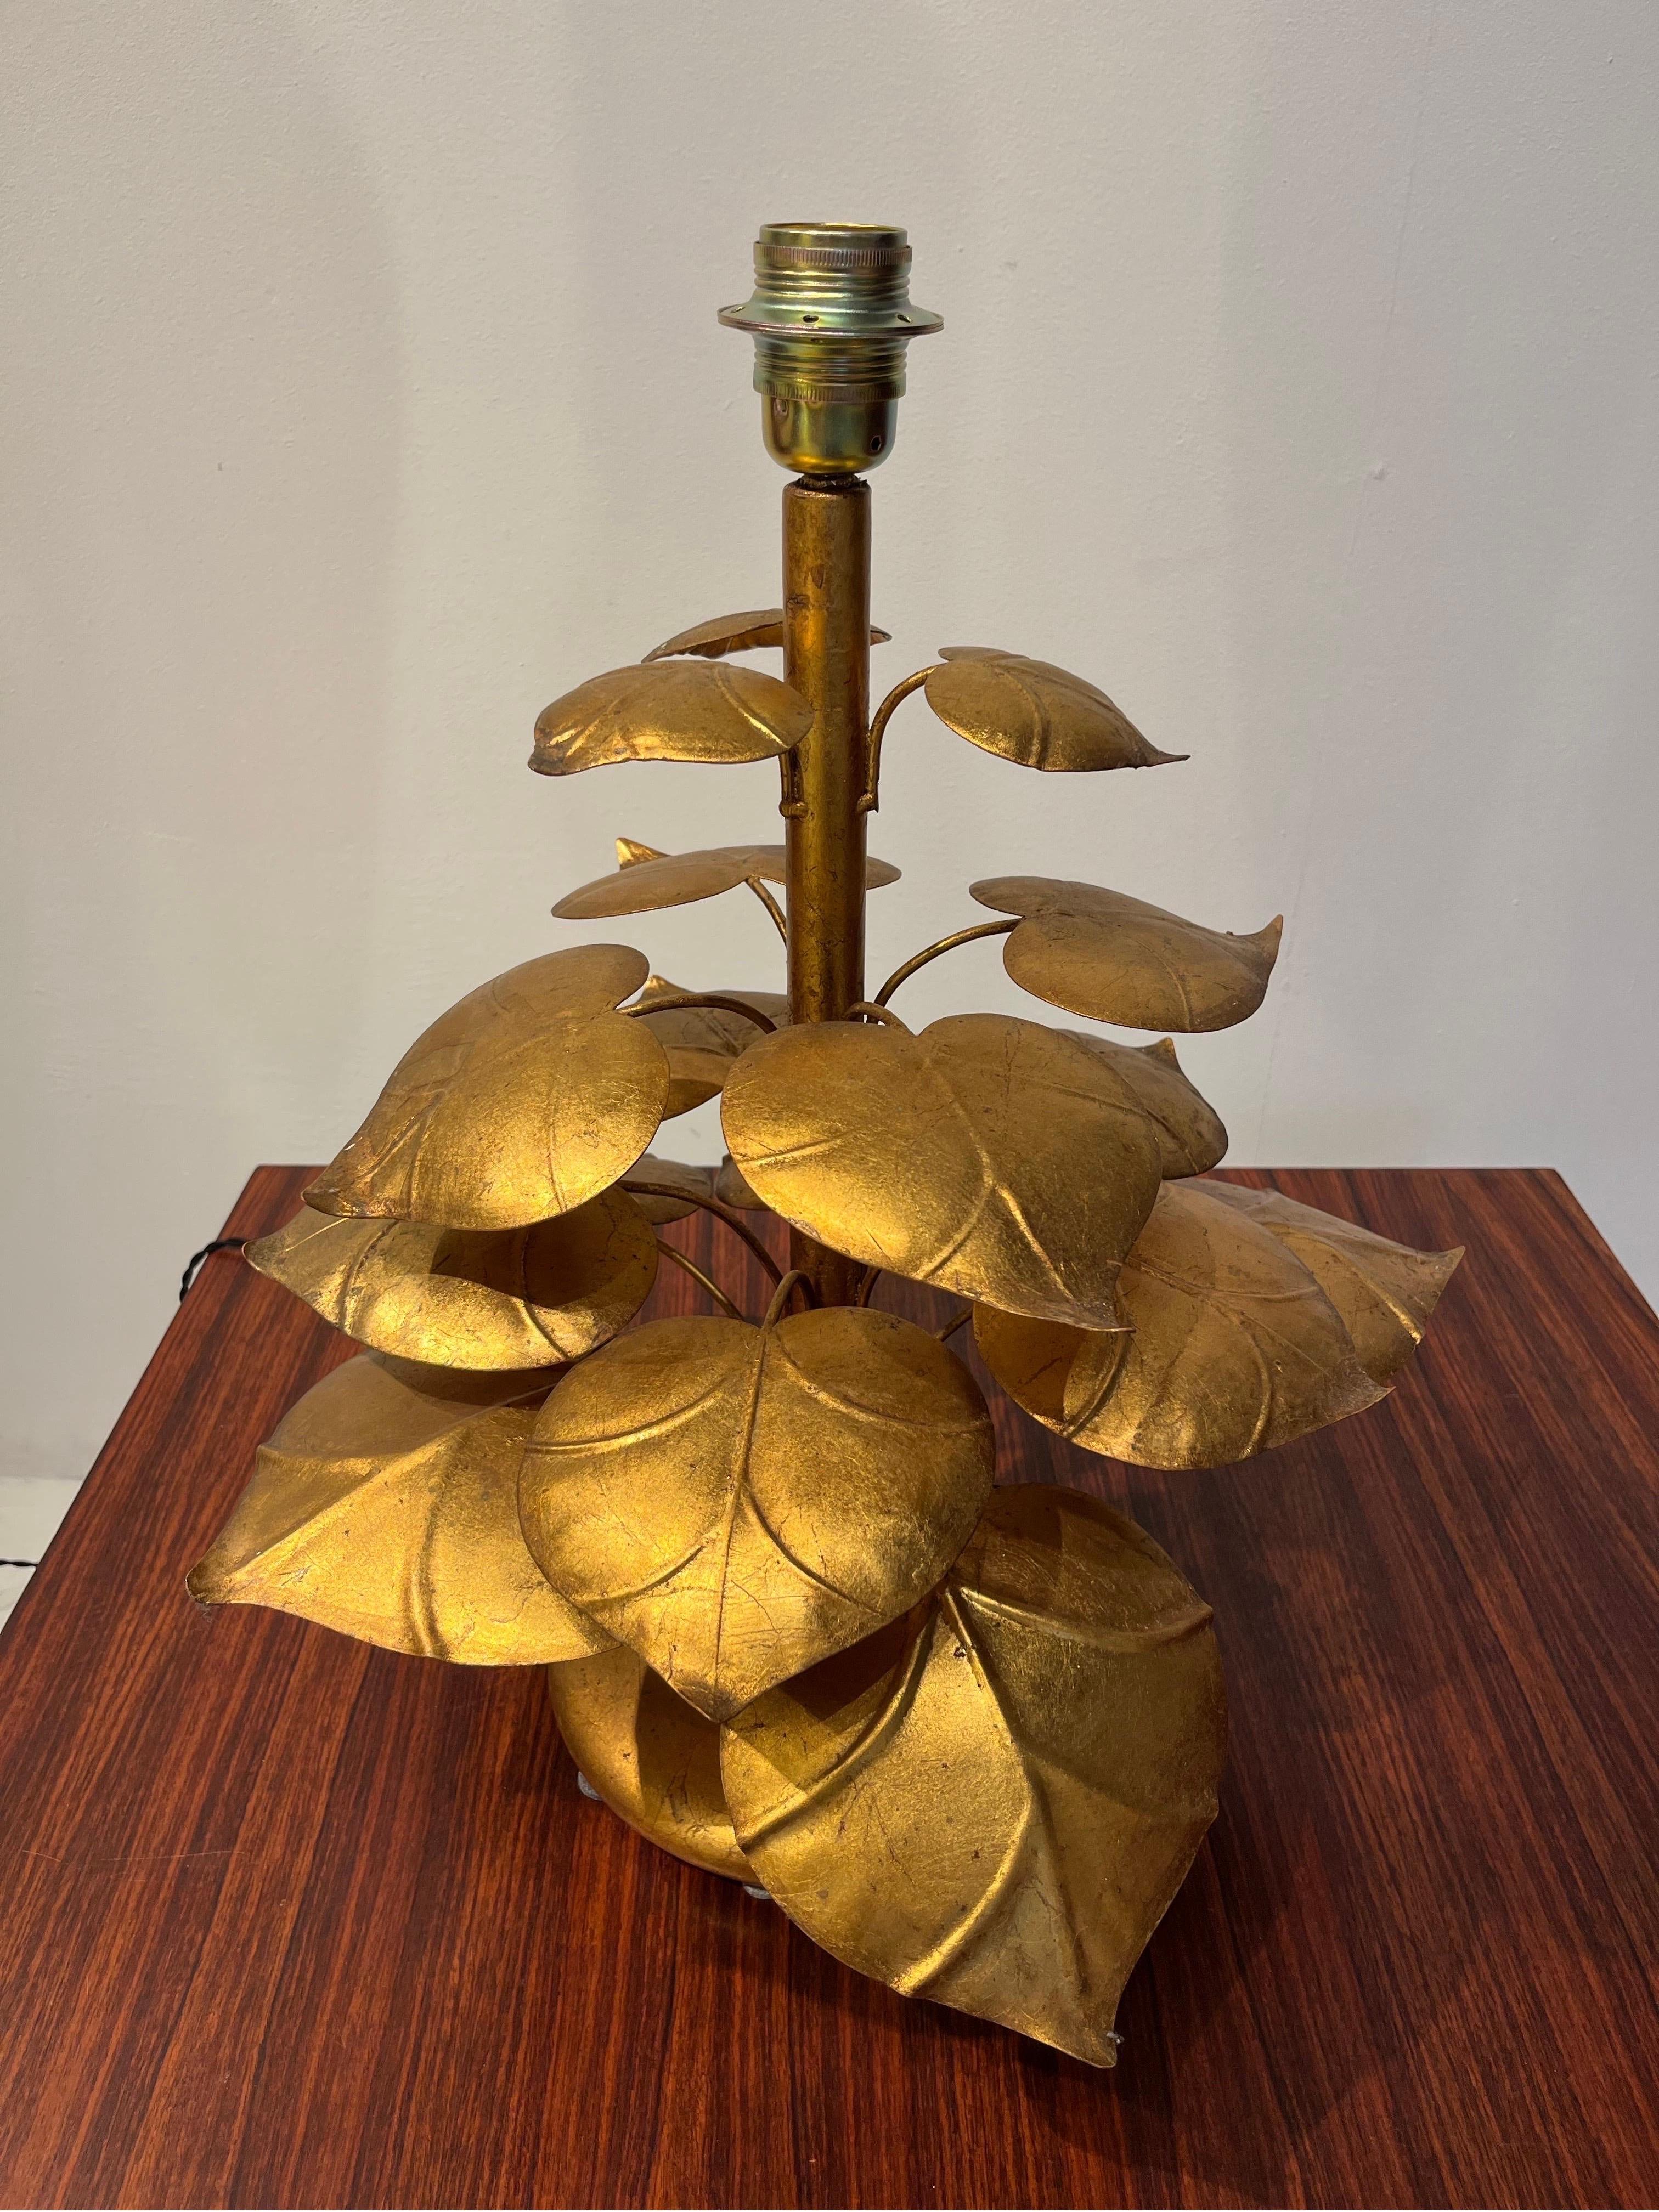 La lampe est en métal doré. Il imite le monde végétal pour ressembler à une plante décorative. Veuillez noter que la taille de la lampe sans l'abat-jour est la suivante : Hauteur 52cm ; Base 23cm.